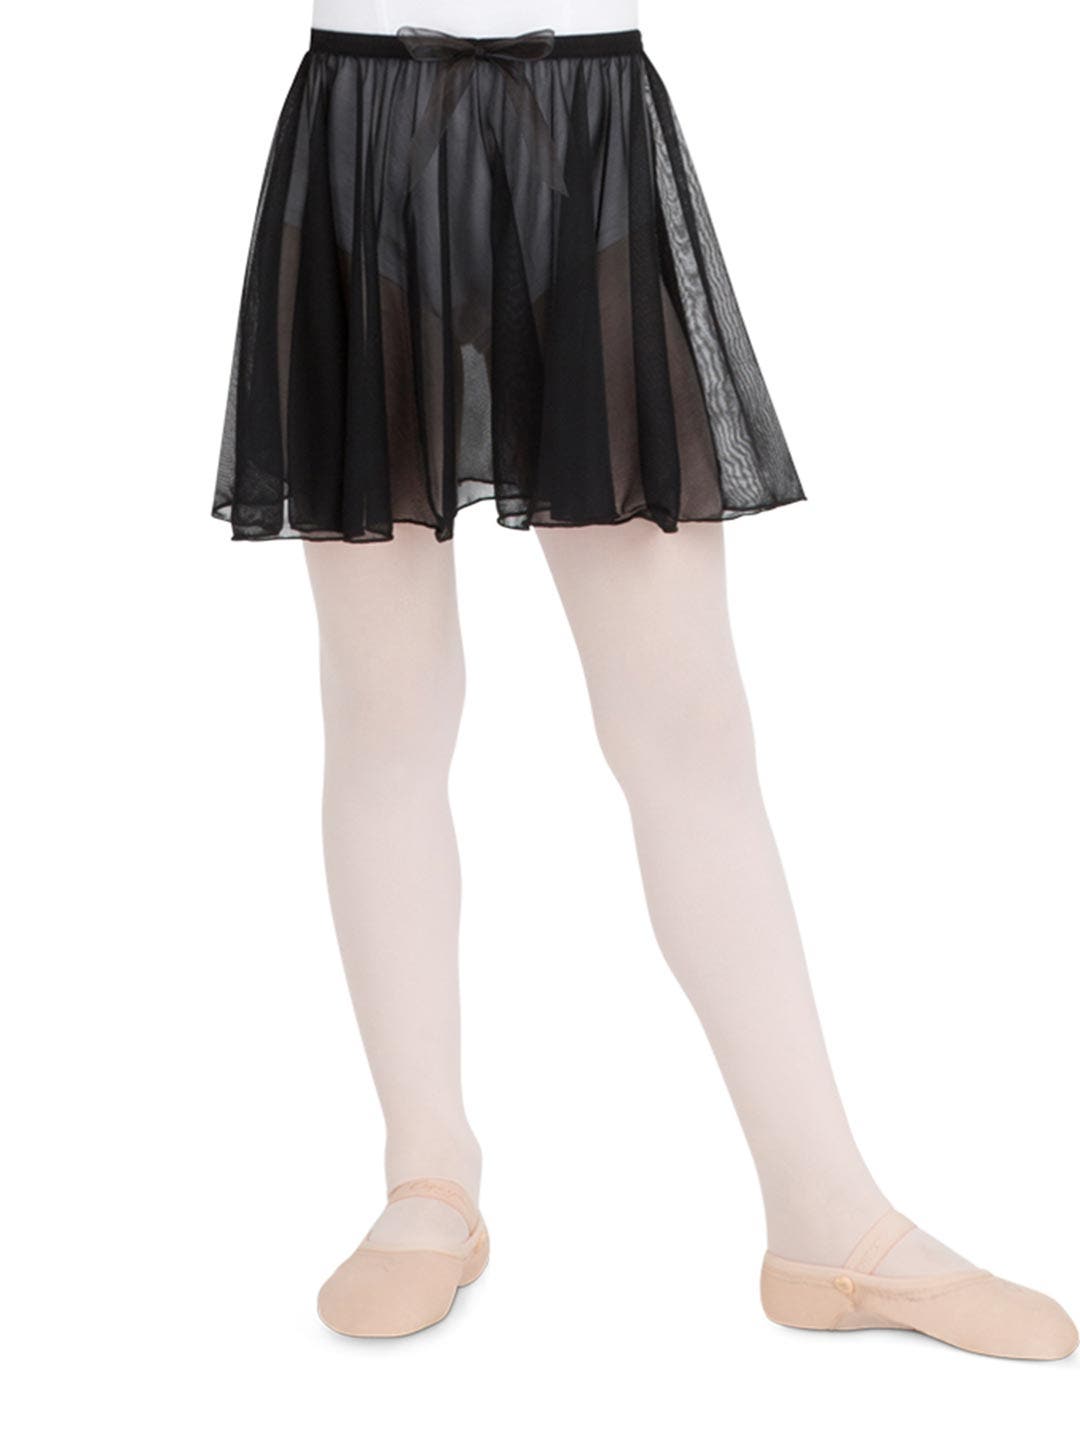 Kids Ballet Skirt